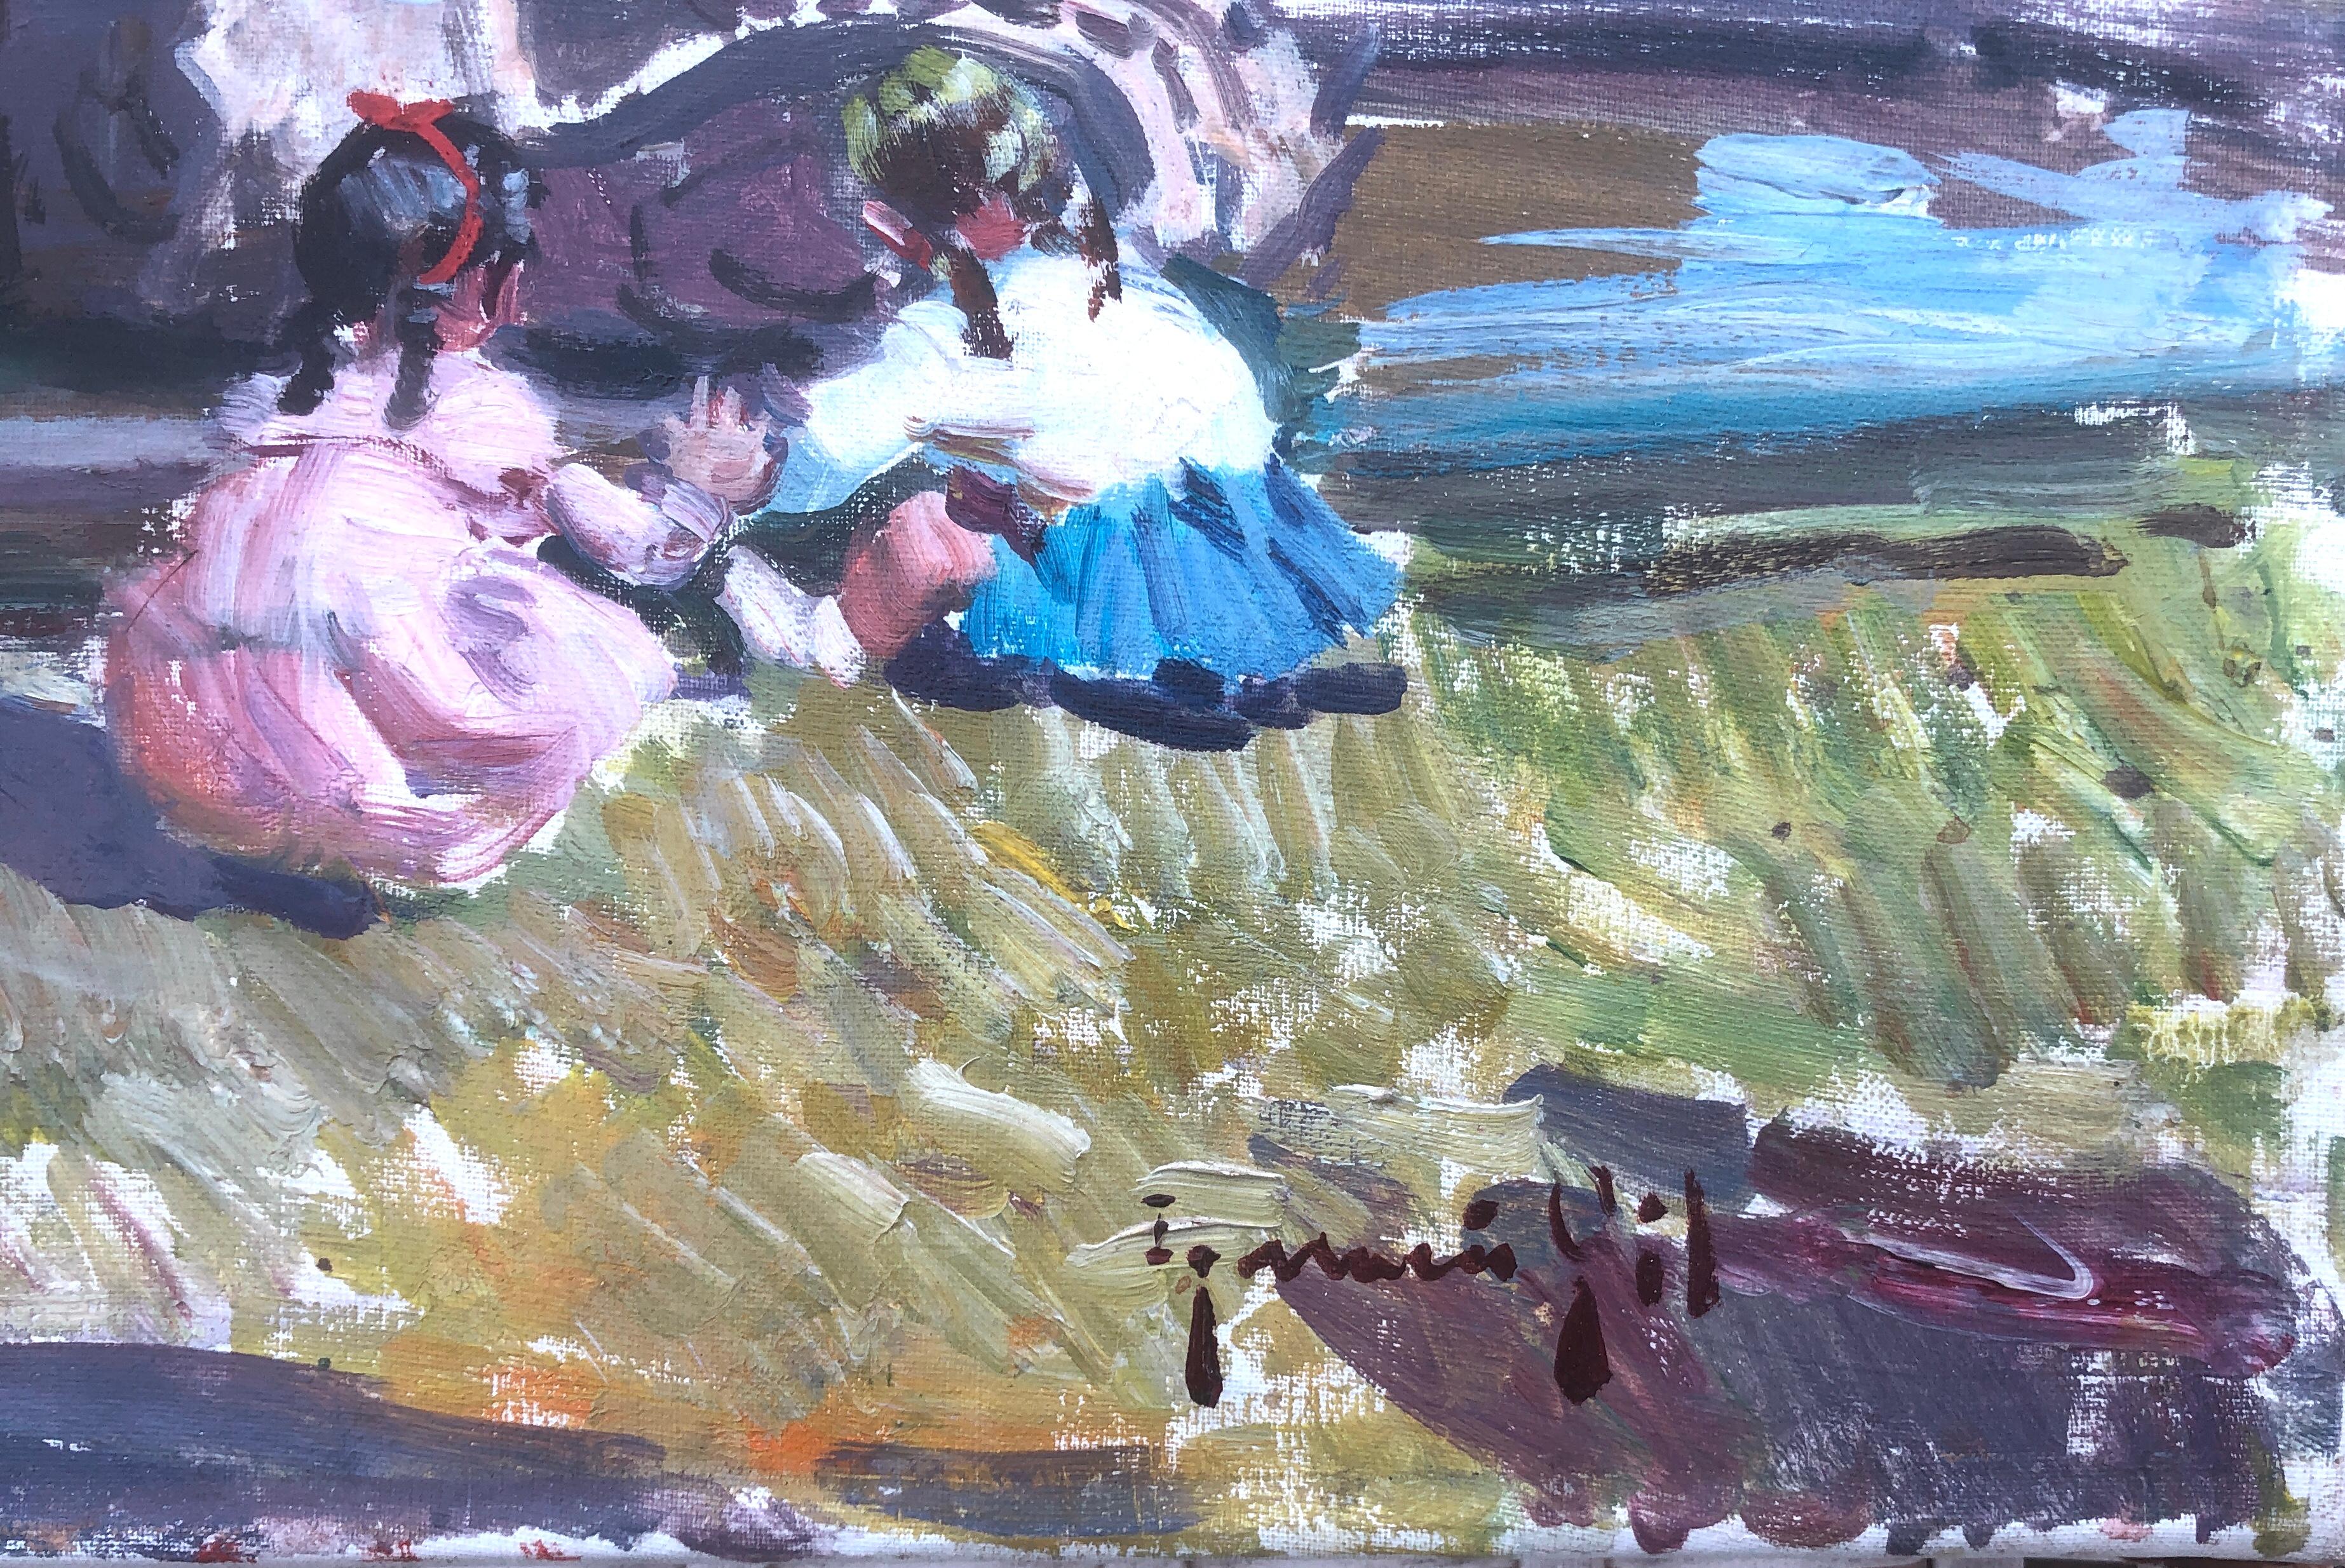 Les enfants jouant dans le parc de Barcelone, Espagne, peinture à l'huile sur toile - Painting de Ignacio Gil Sala